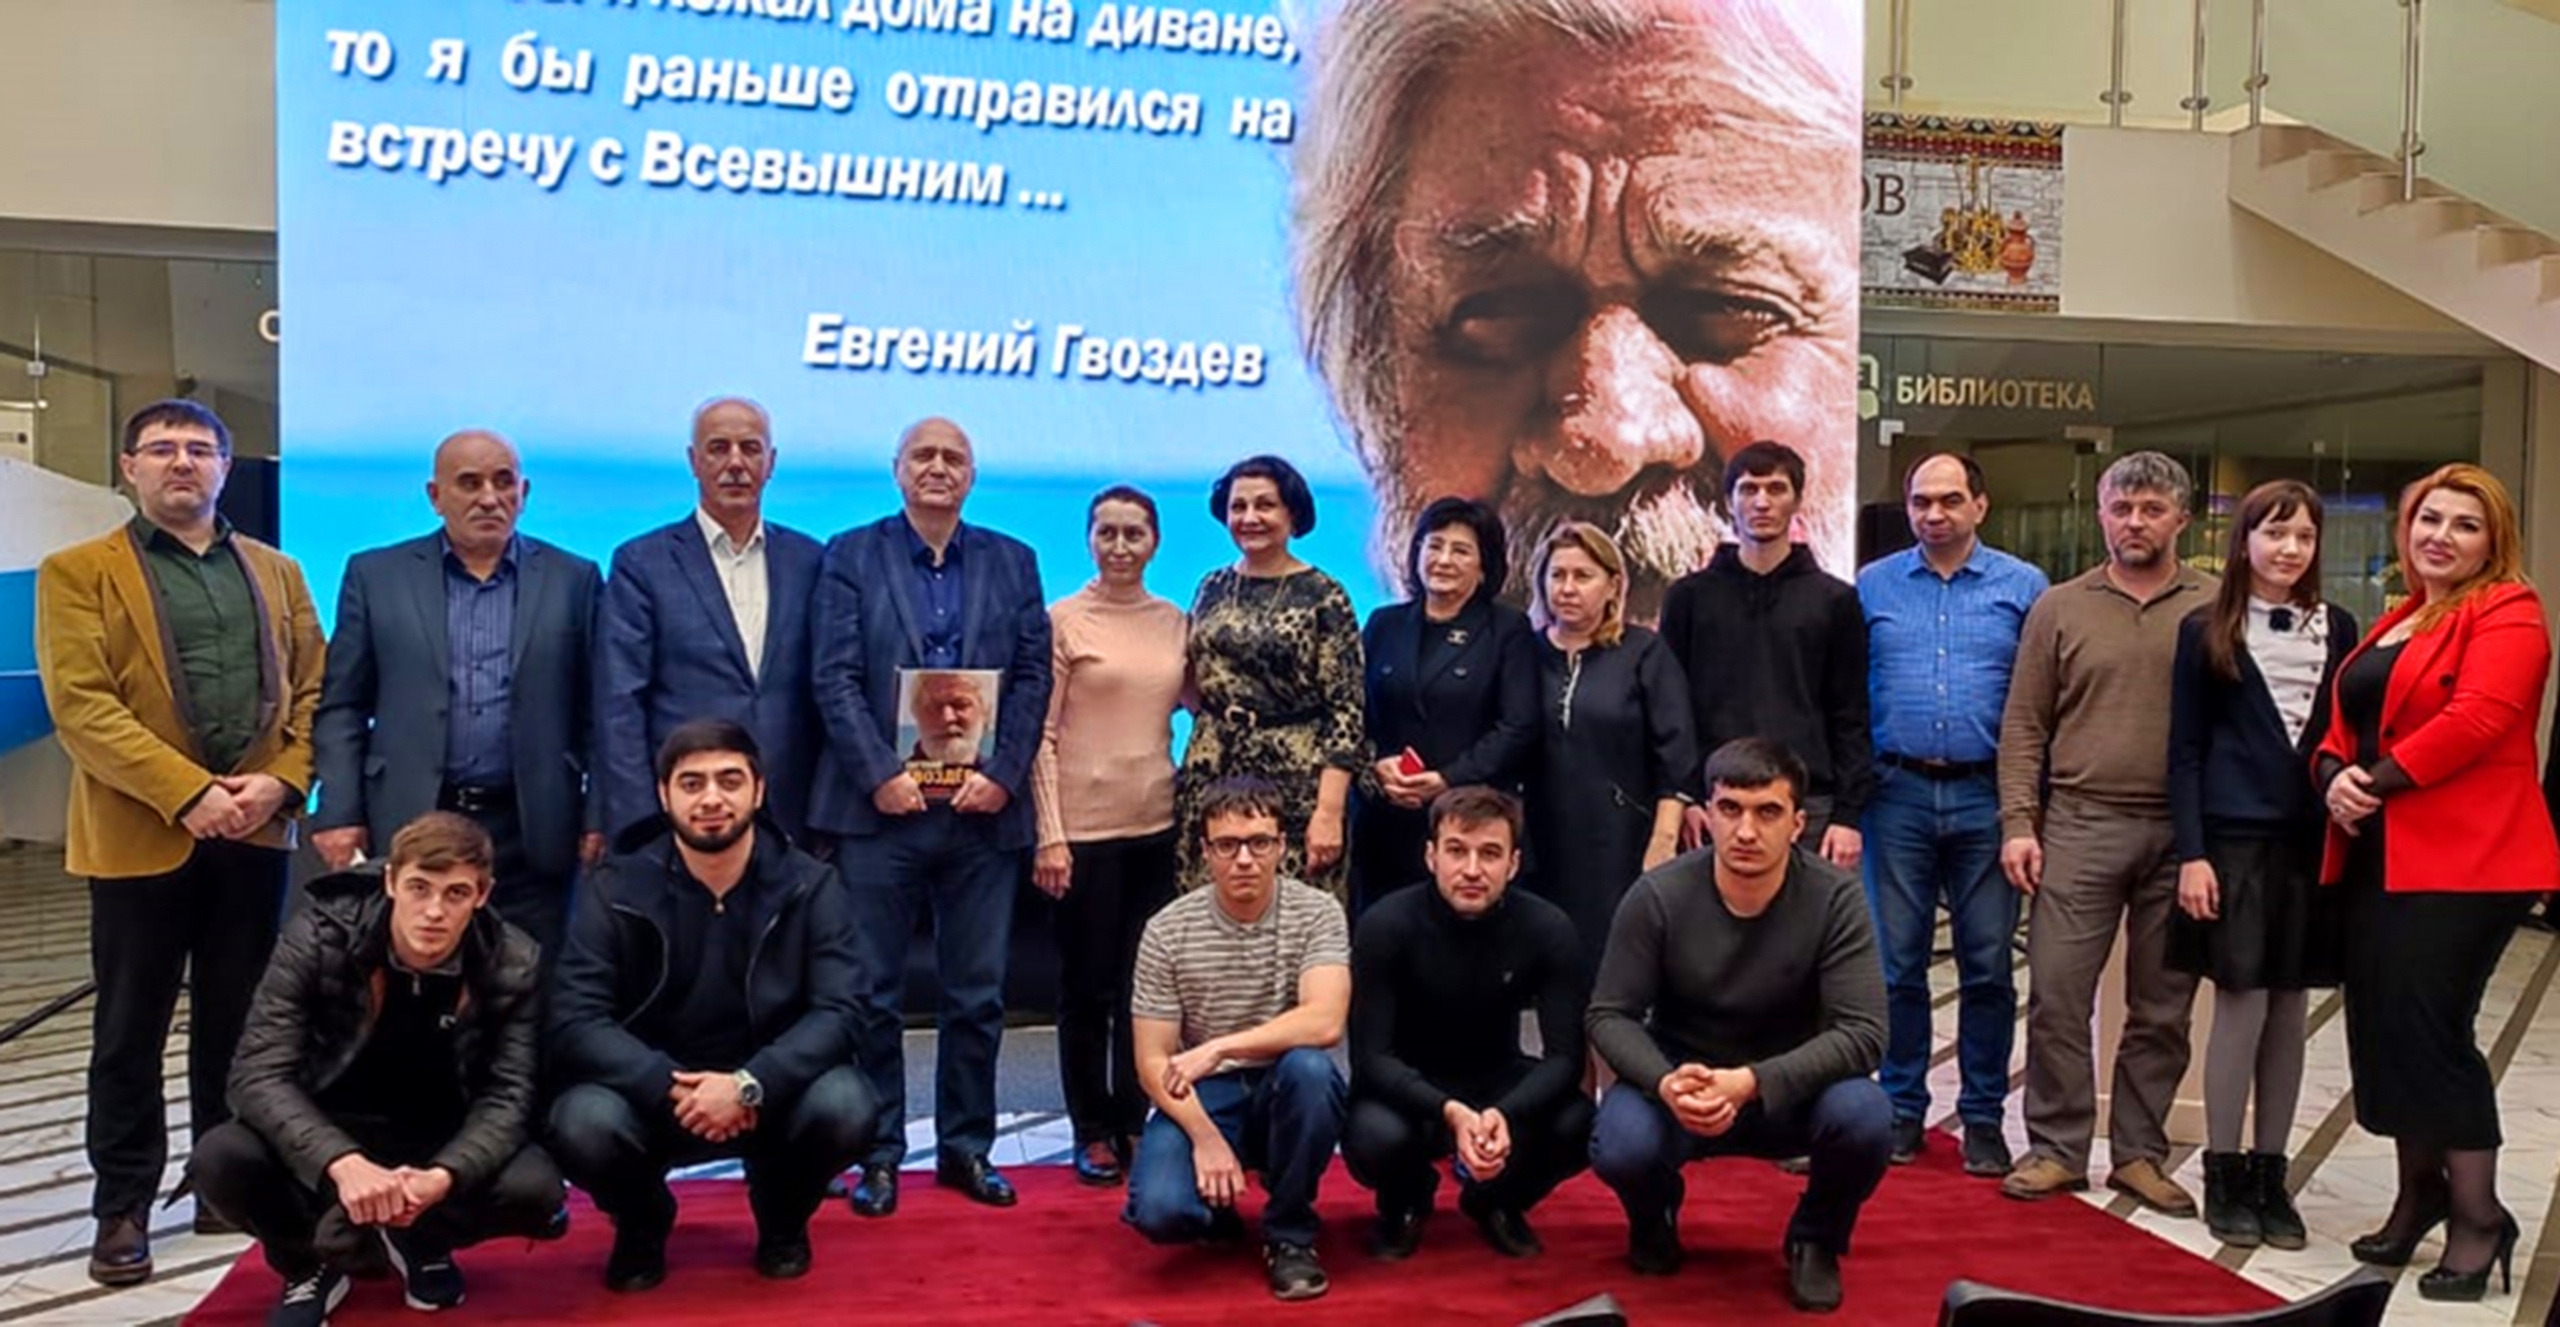 Организаторы и участники памятного мероприятия. Фото предоставлено Дагестанским отделением РГО